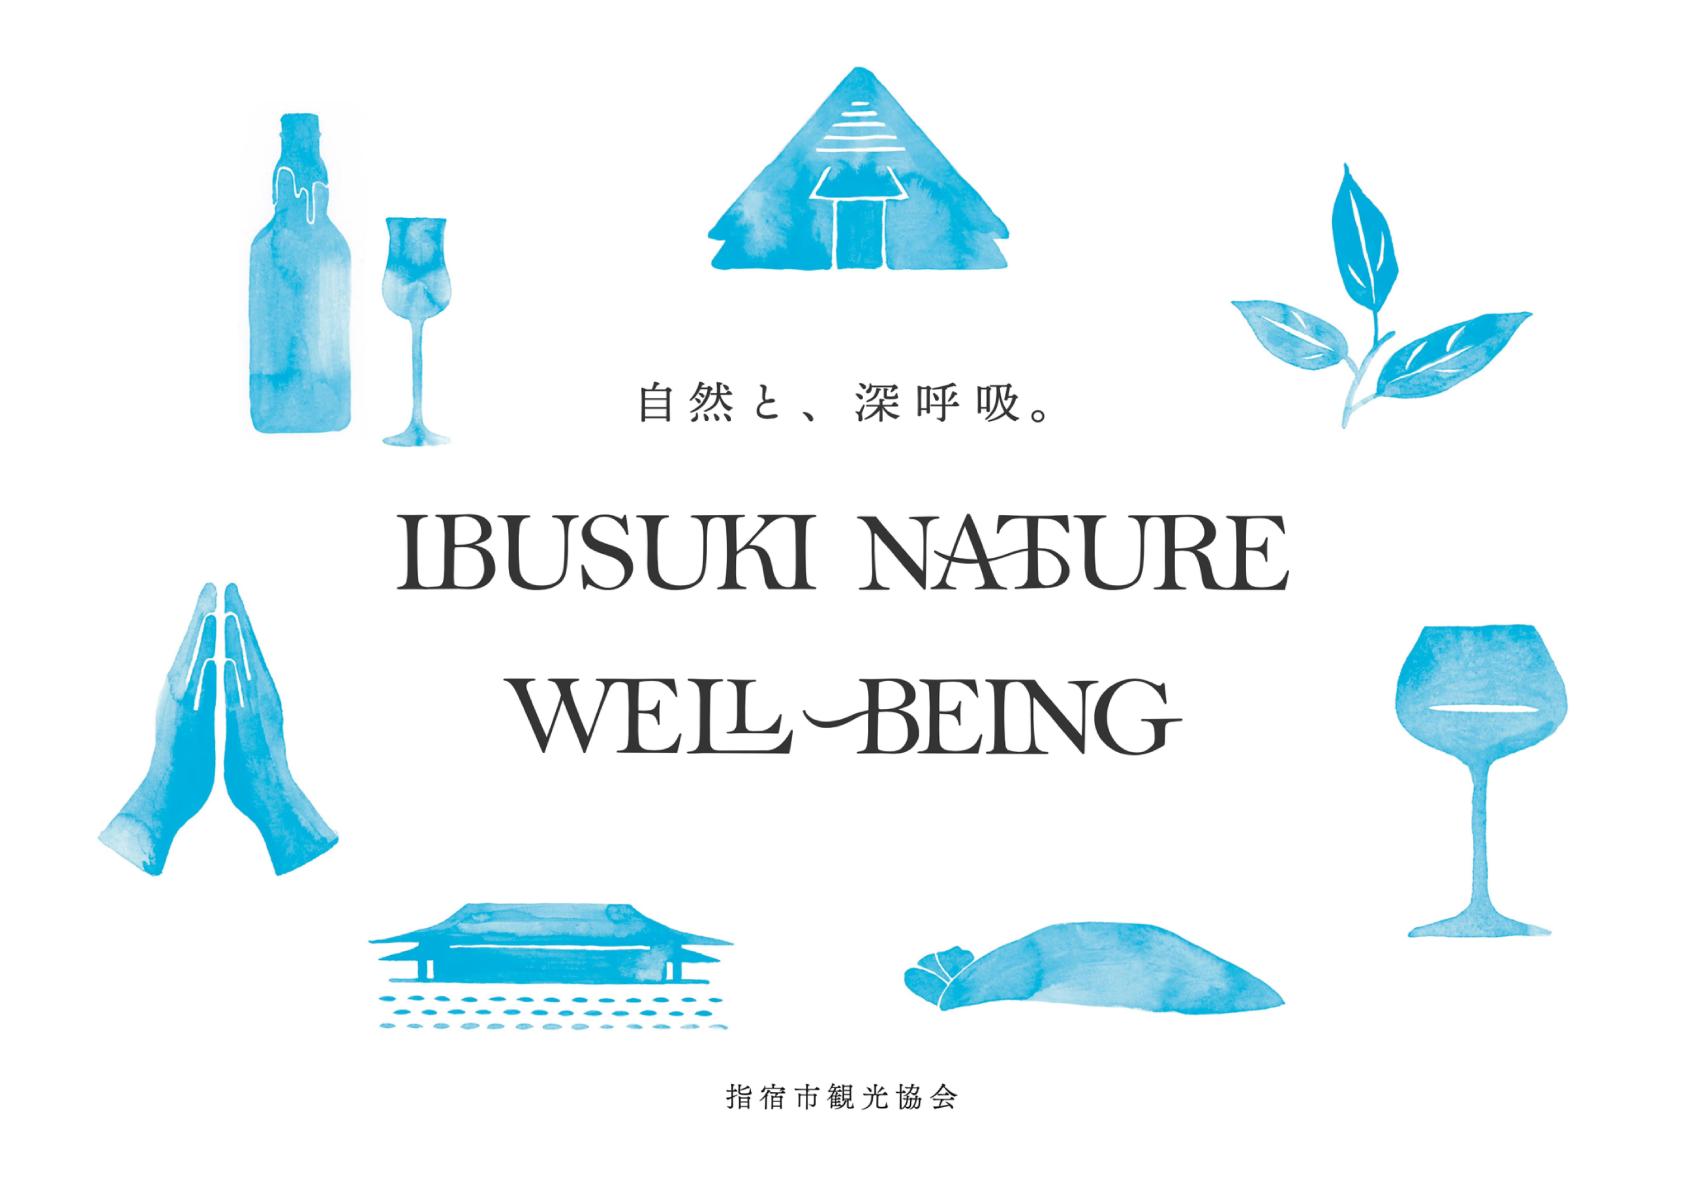 「文化と自然を楽しむ7つのNATURE WELL-BEING」発表!-1